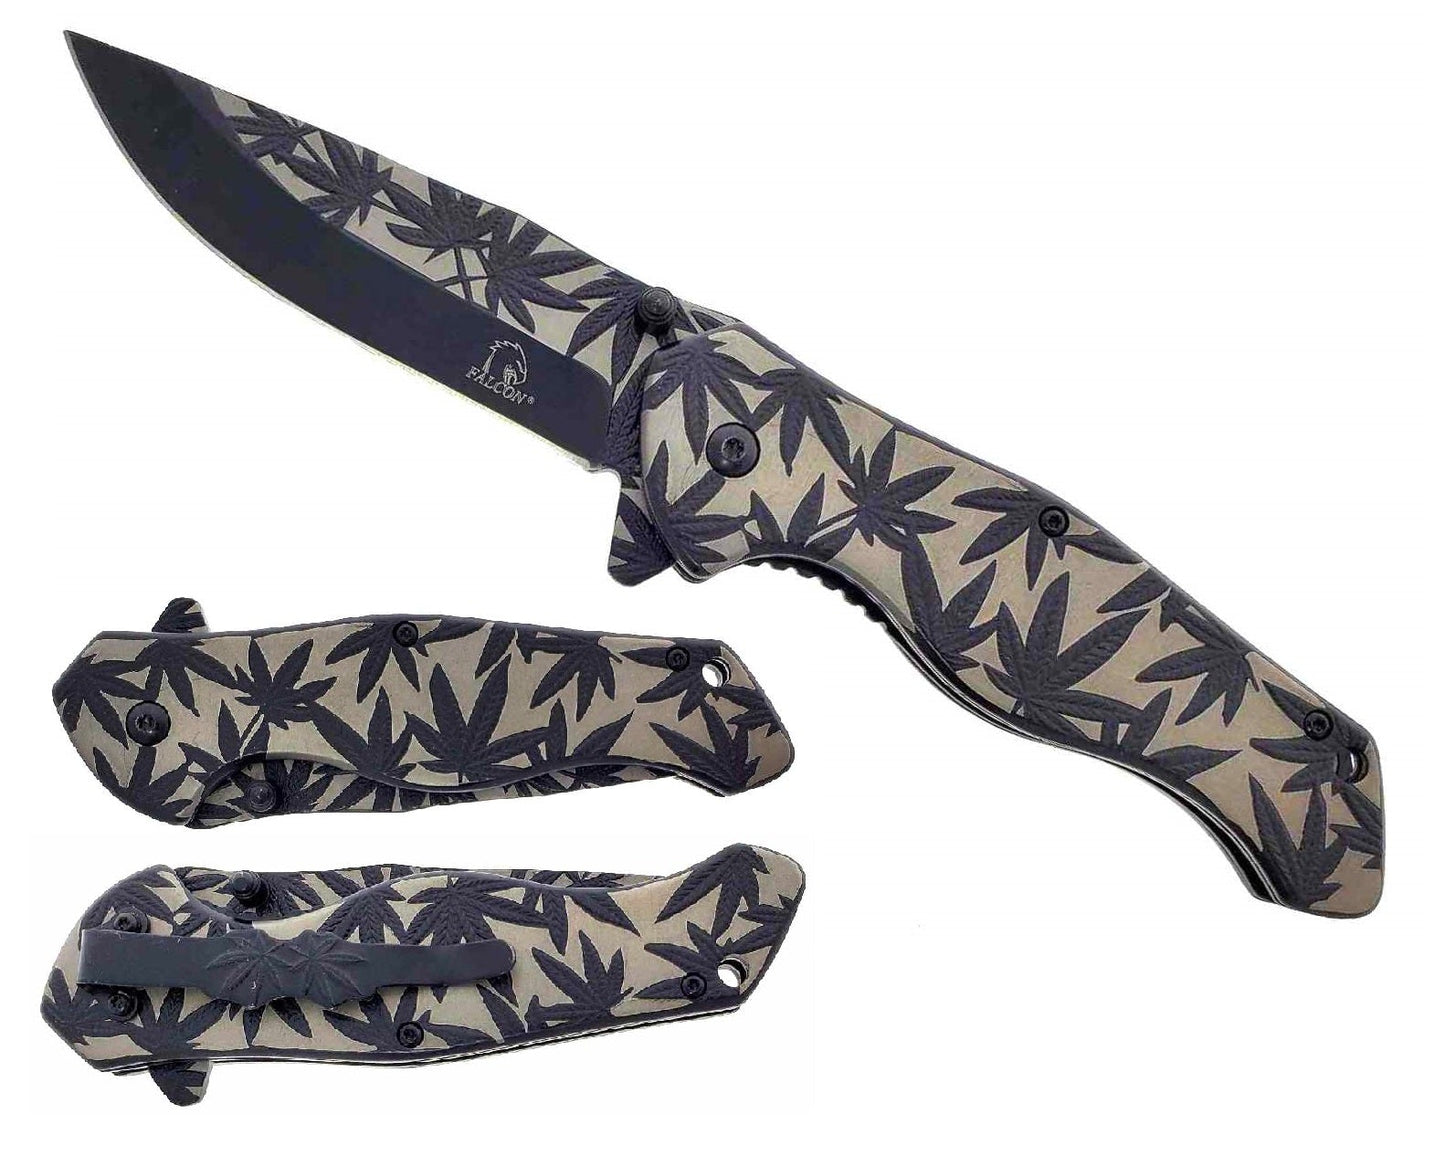 8" Overall Knife w Black Marijuana Design